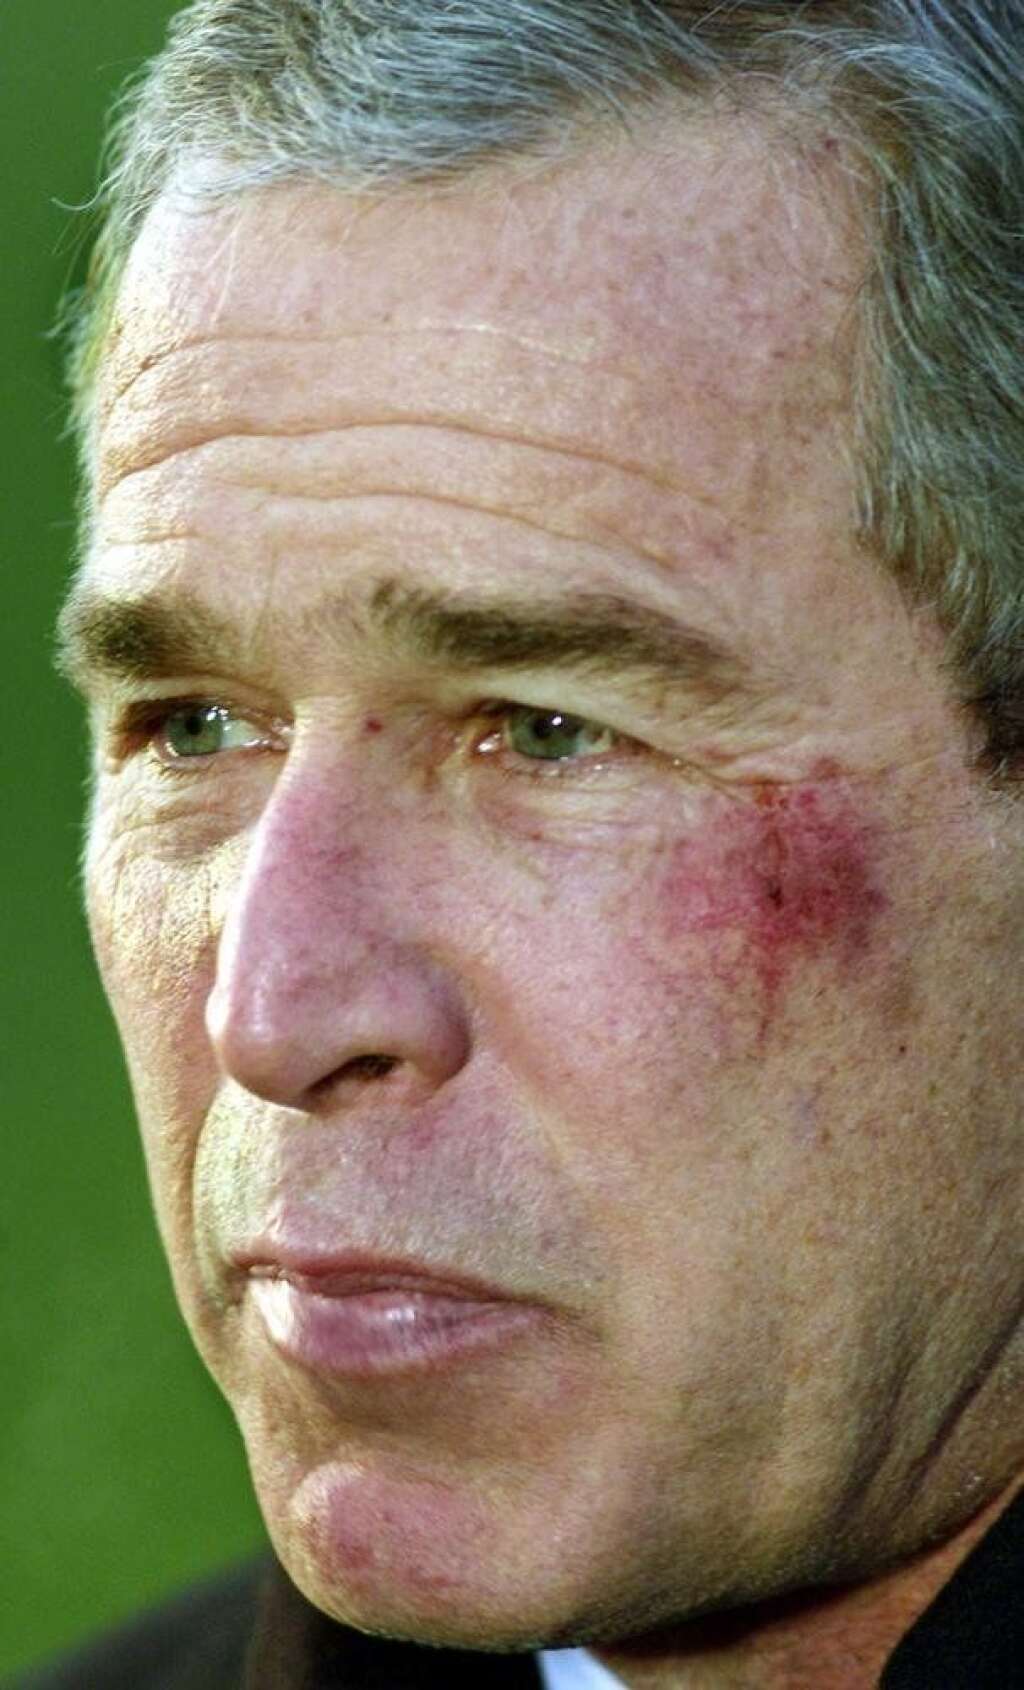 George W. Bush manque s'étouffer avec un bretzel - Cette belle ecchymose sur la joue gauche de l'ancien président est la conséquence d'une chute peu banale en janvier 2002. Alors qu'il regarde un match de football américain à la télévision, <a href="http://www.leparisien.fr/politique/etats-unis-bush-victime-d-un-bretzel-15-01-2002-2002736517.php" target="_blank">George W. Bush s'est évanoui à cause d'un bretzel avalé de travers</a>.